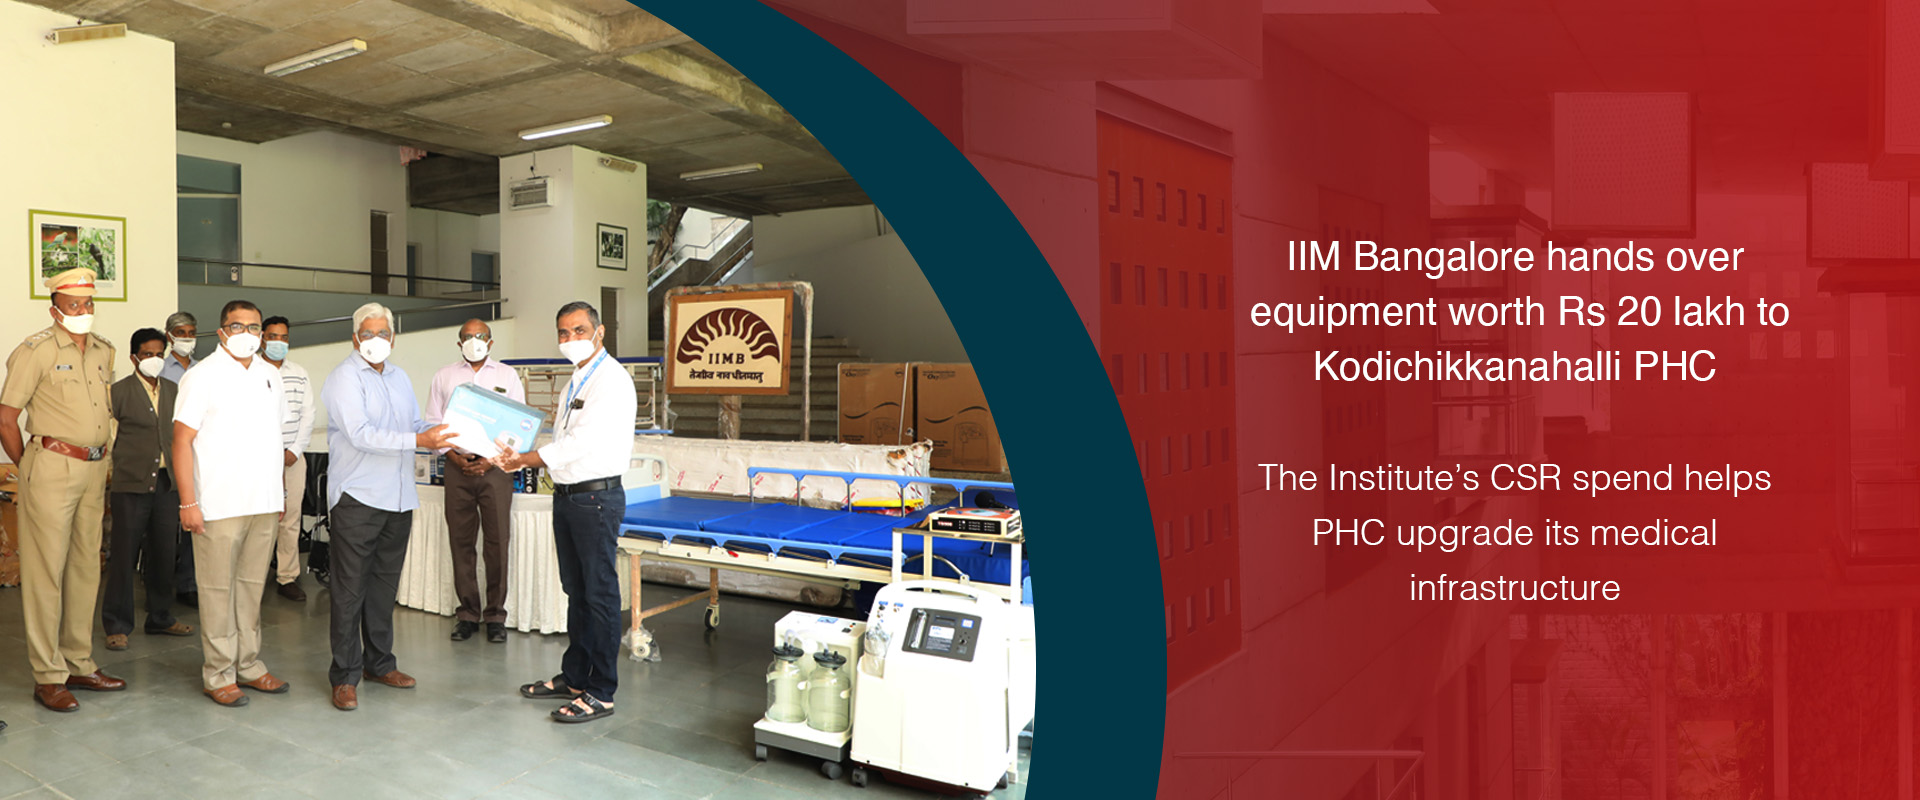 IIM Bangalore hands over equipment worth Rs 20 lakh to Kodichikkanahalli PHC